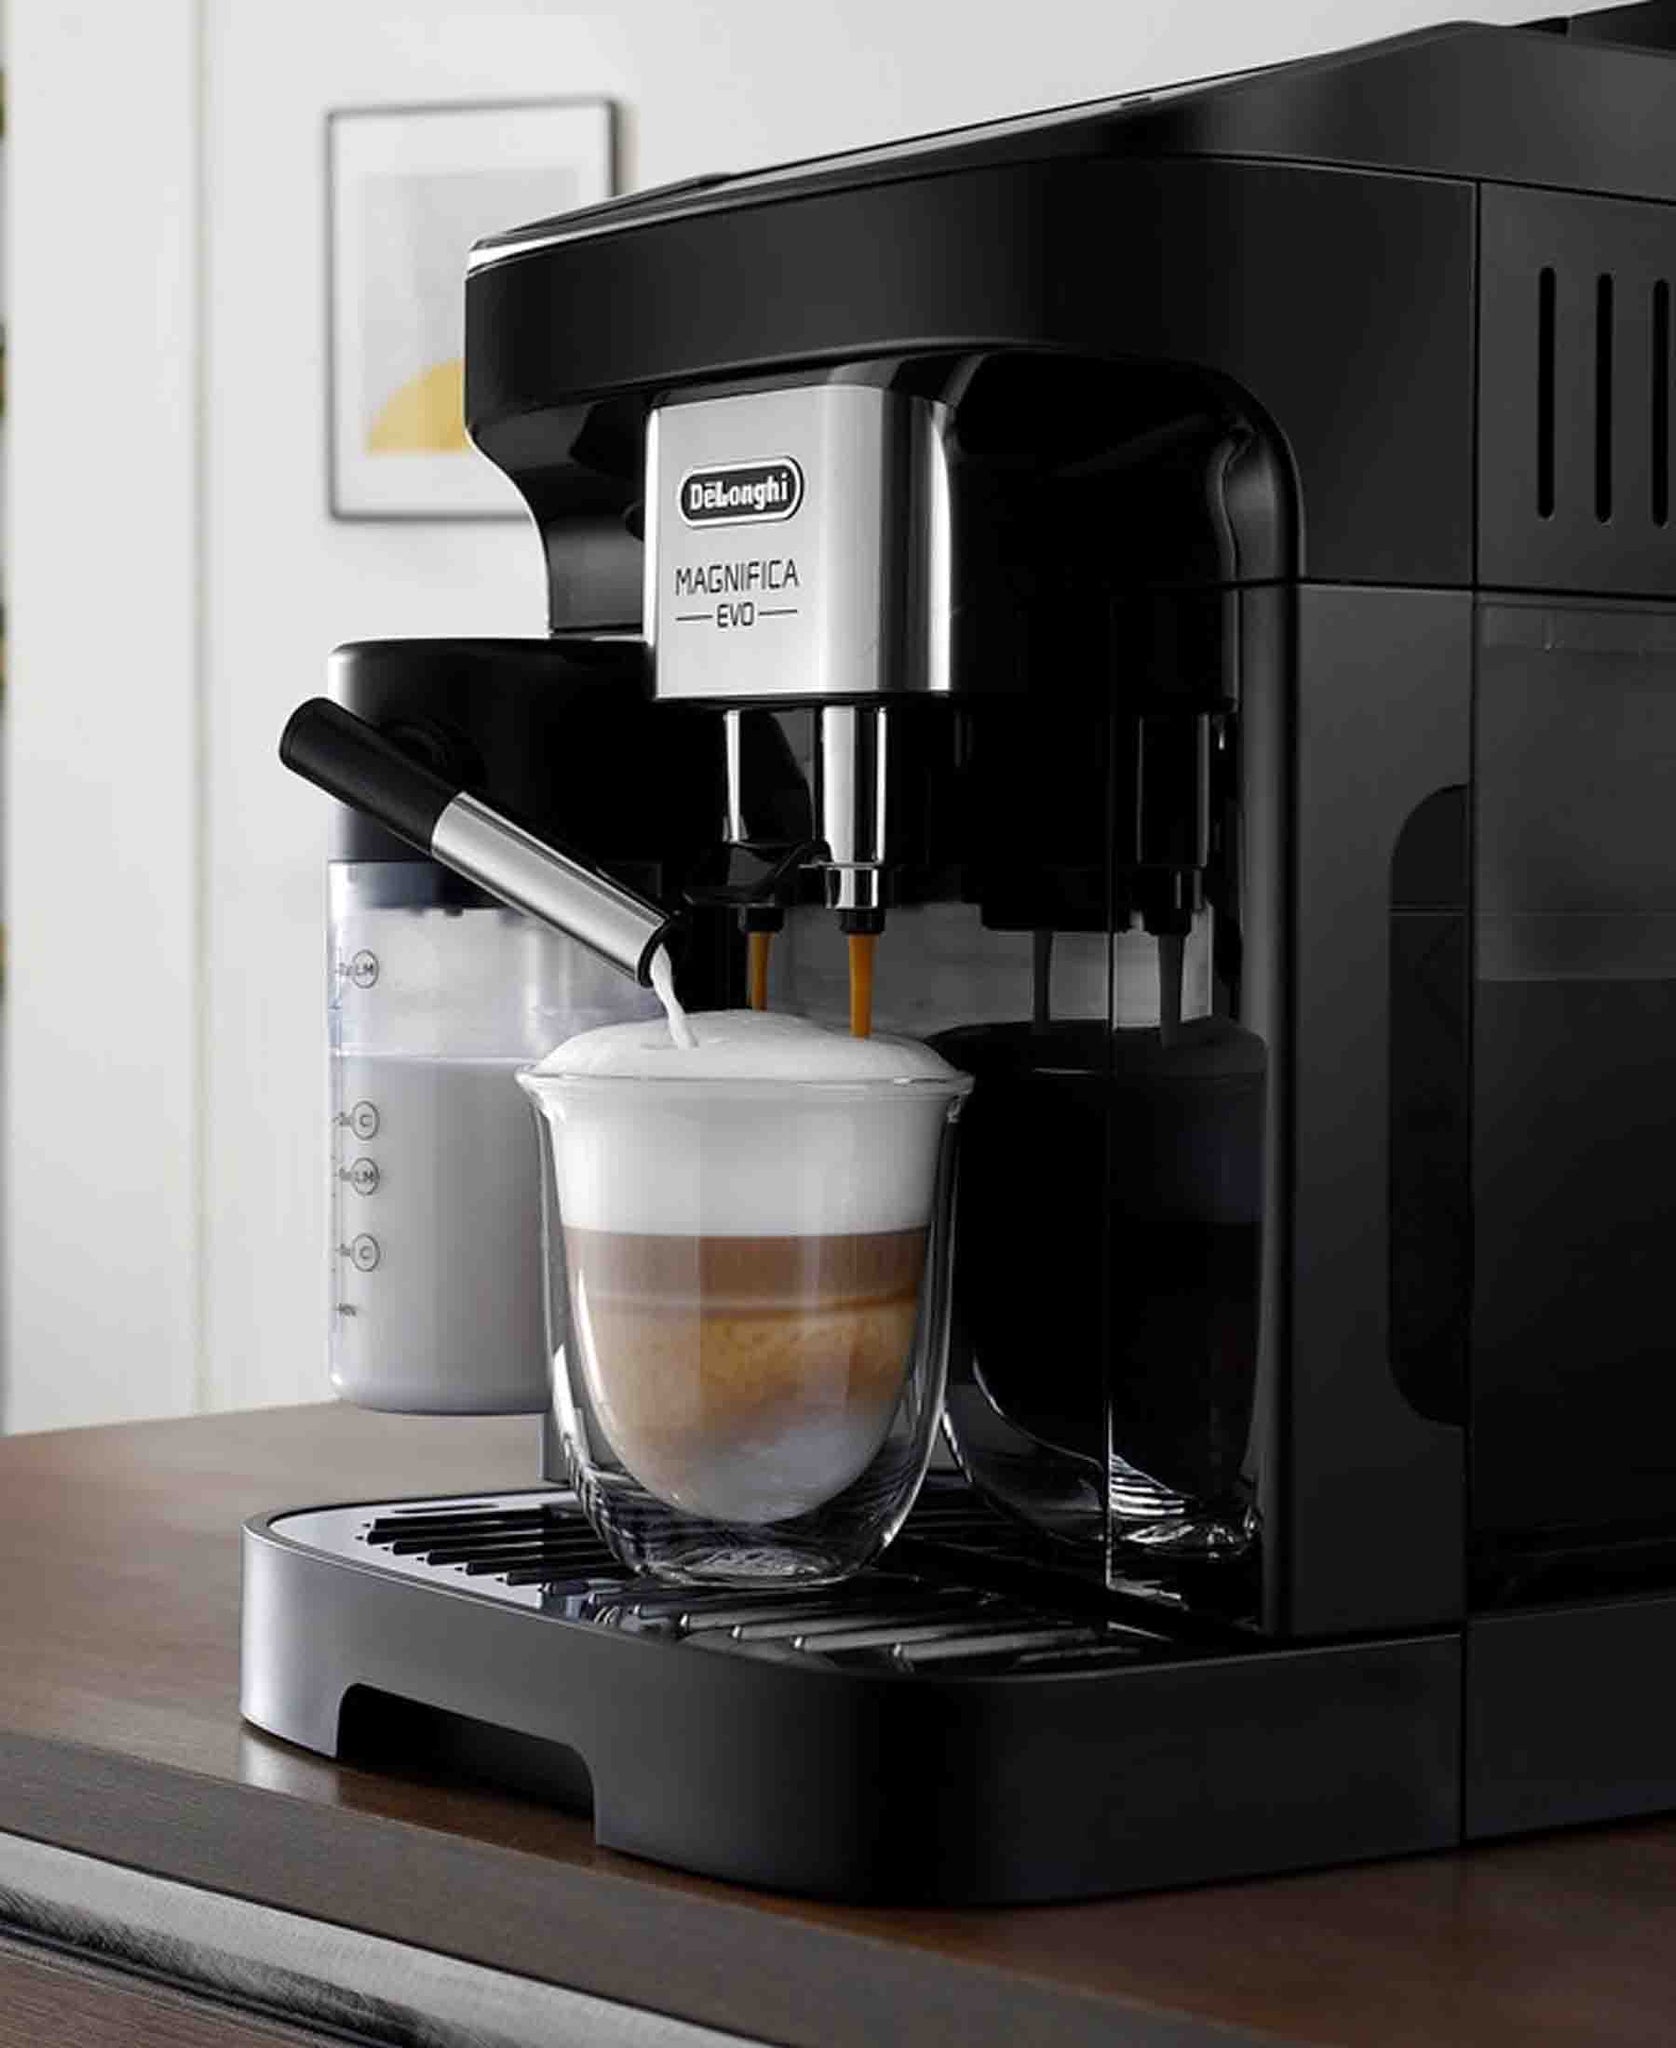 DeLonghi Magnifica Evo Automatic Coffee Maker - Black